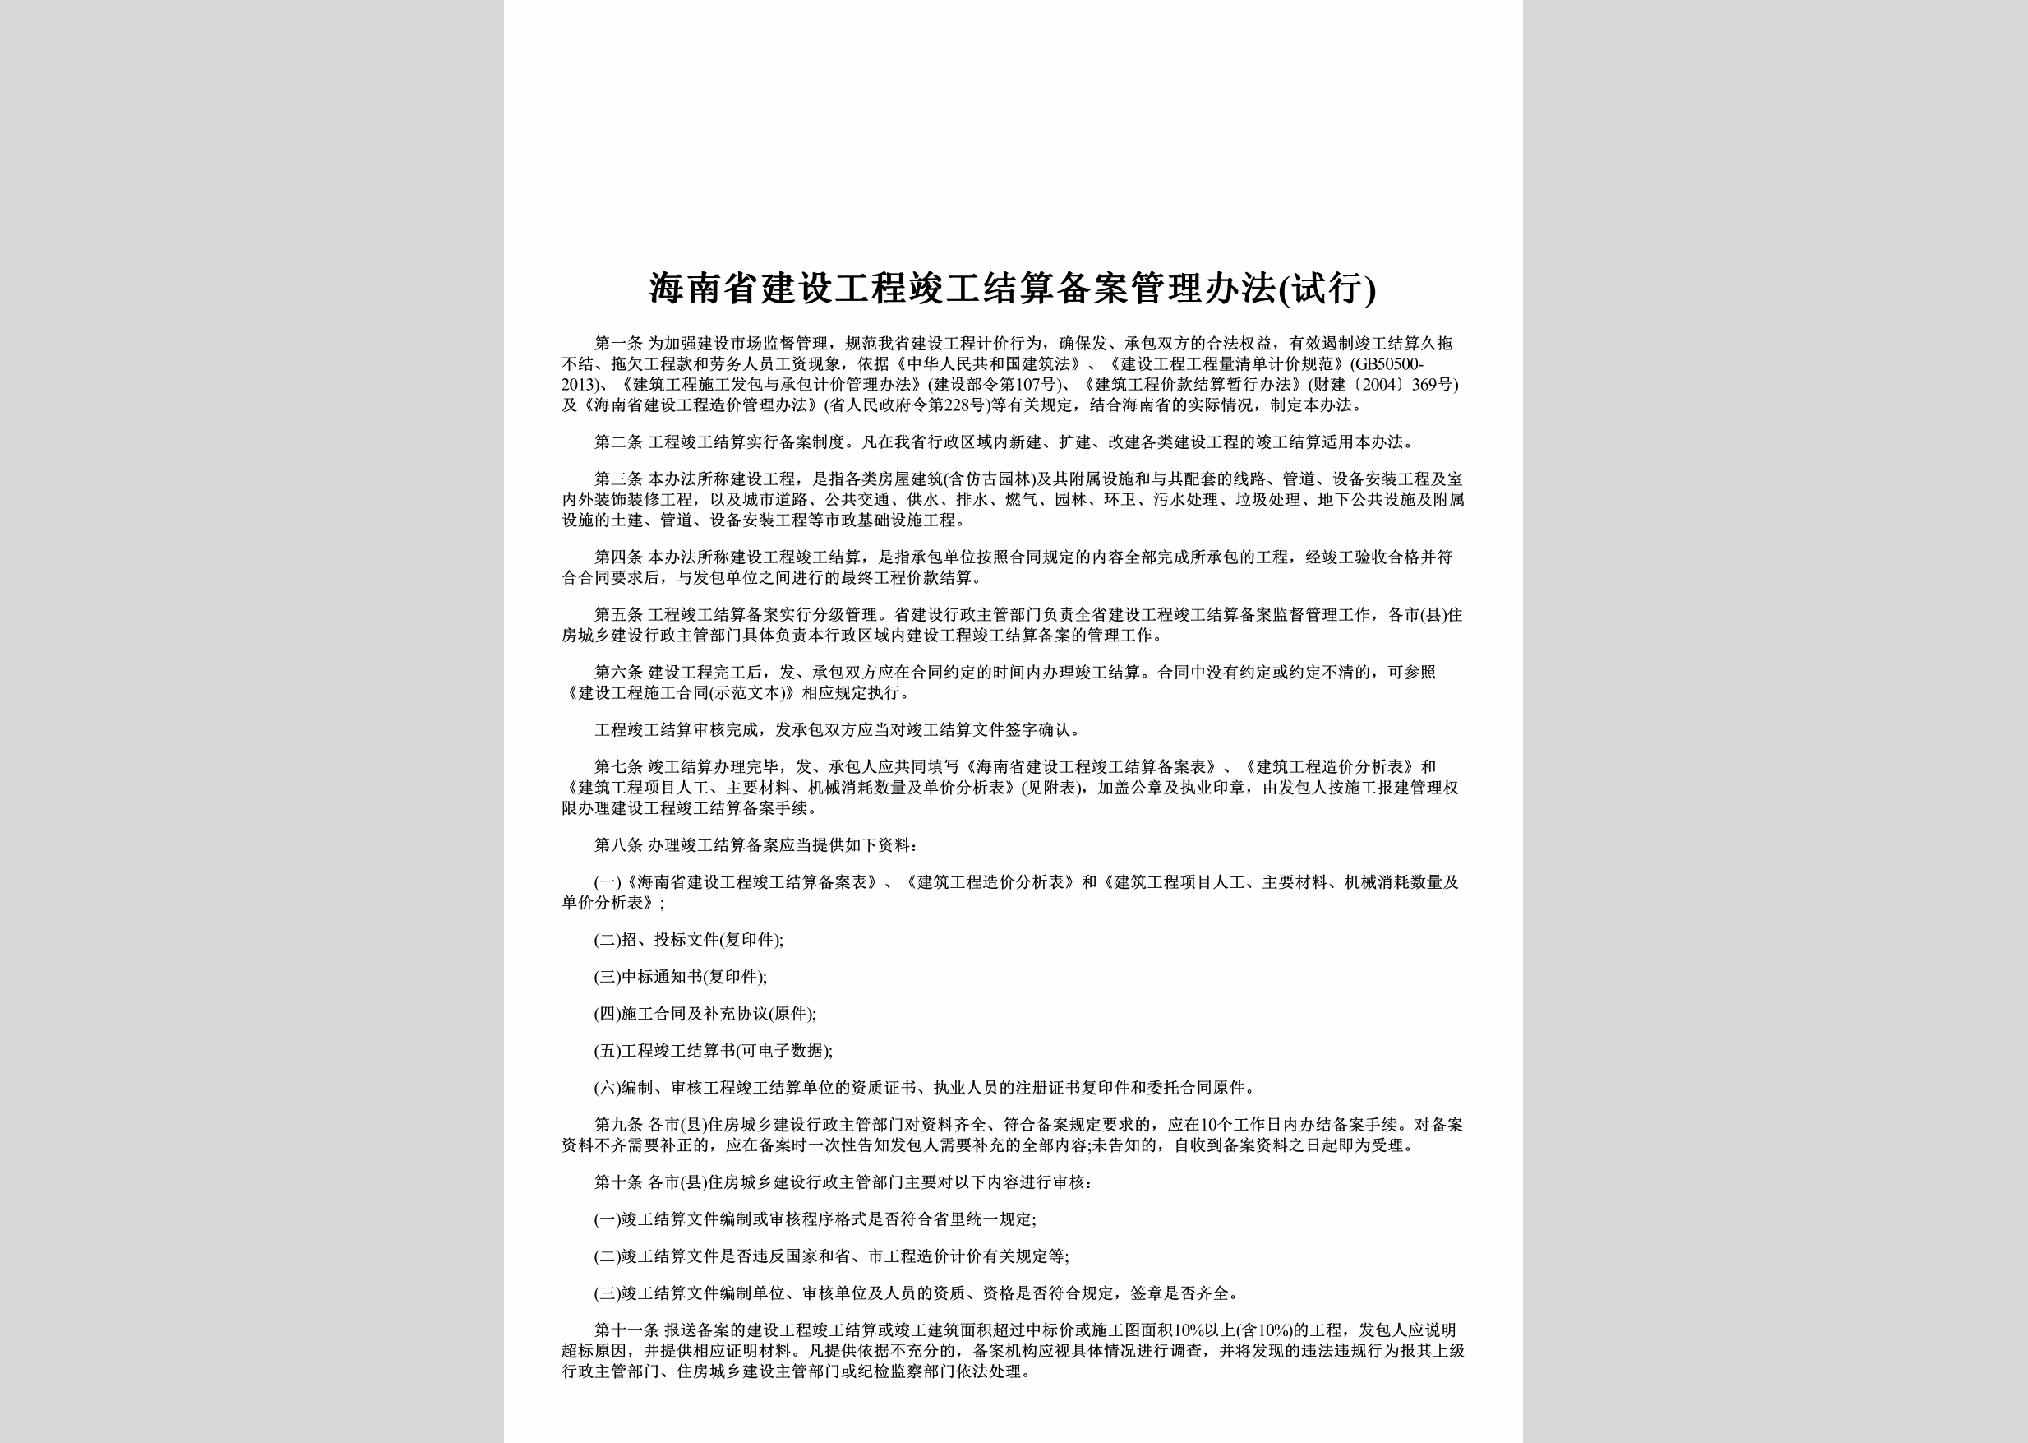 HAN-GCJSBABF-2014：海南省建设工程竣工结算备案管理办法(试行)